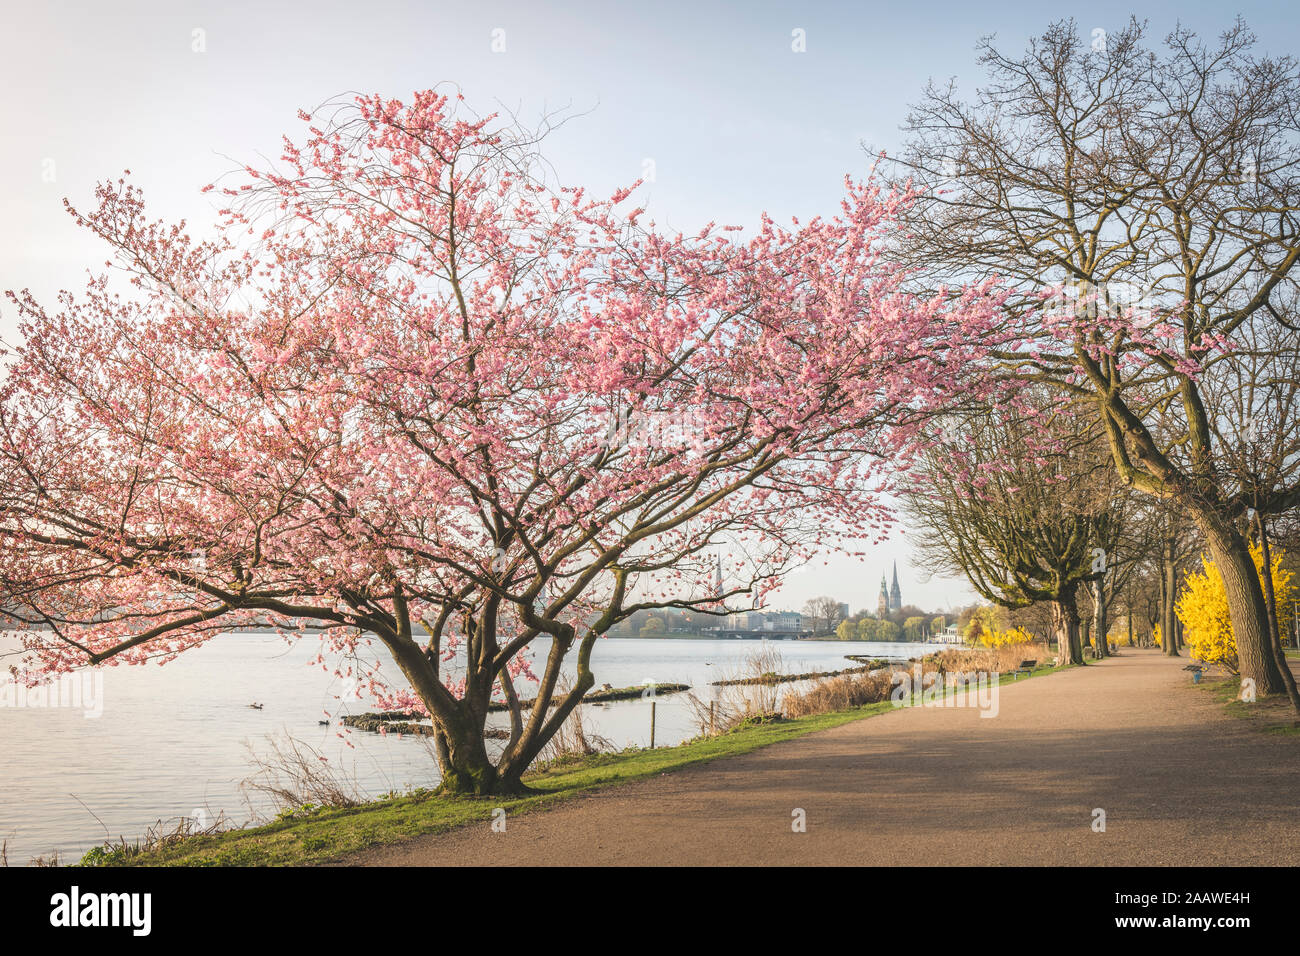 Perspectiva decreciente de carretera vacía en medio de los cerezos por el río Alster durante la primavera, Hamburgo, Alemania. Foto de stock